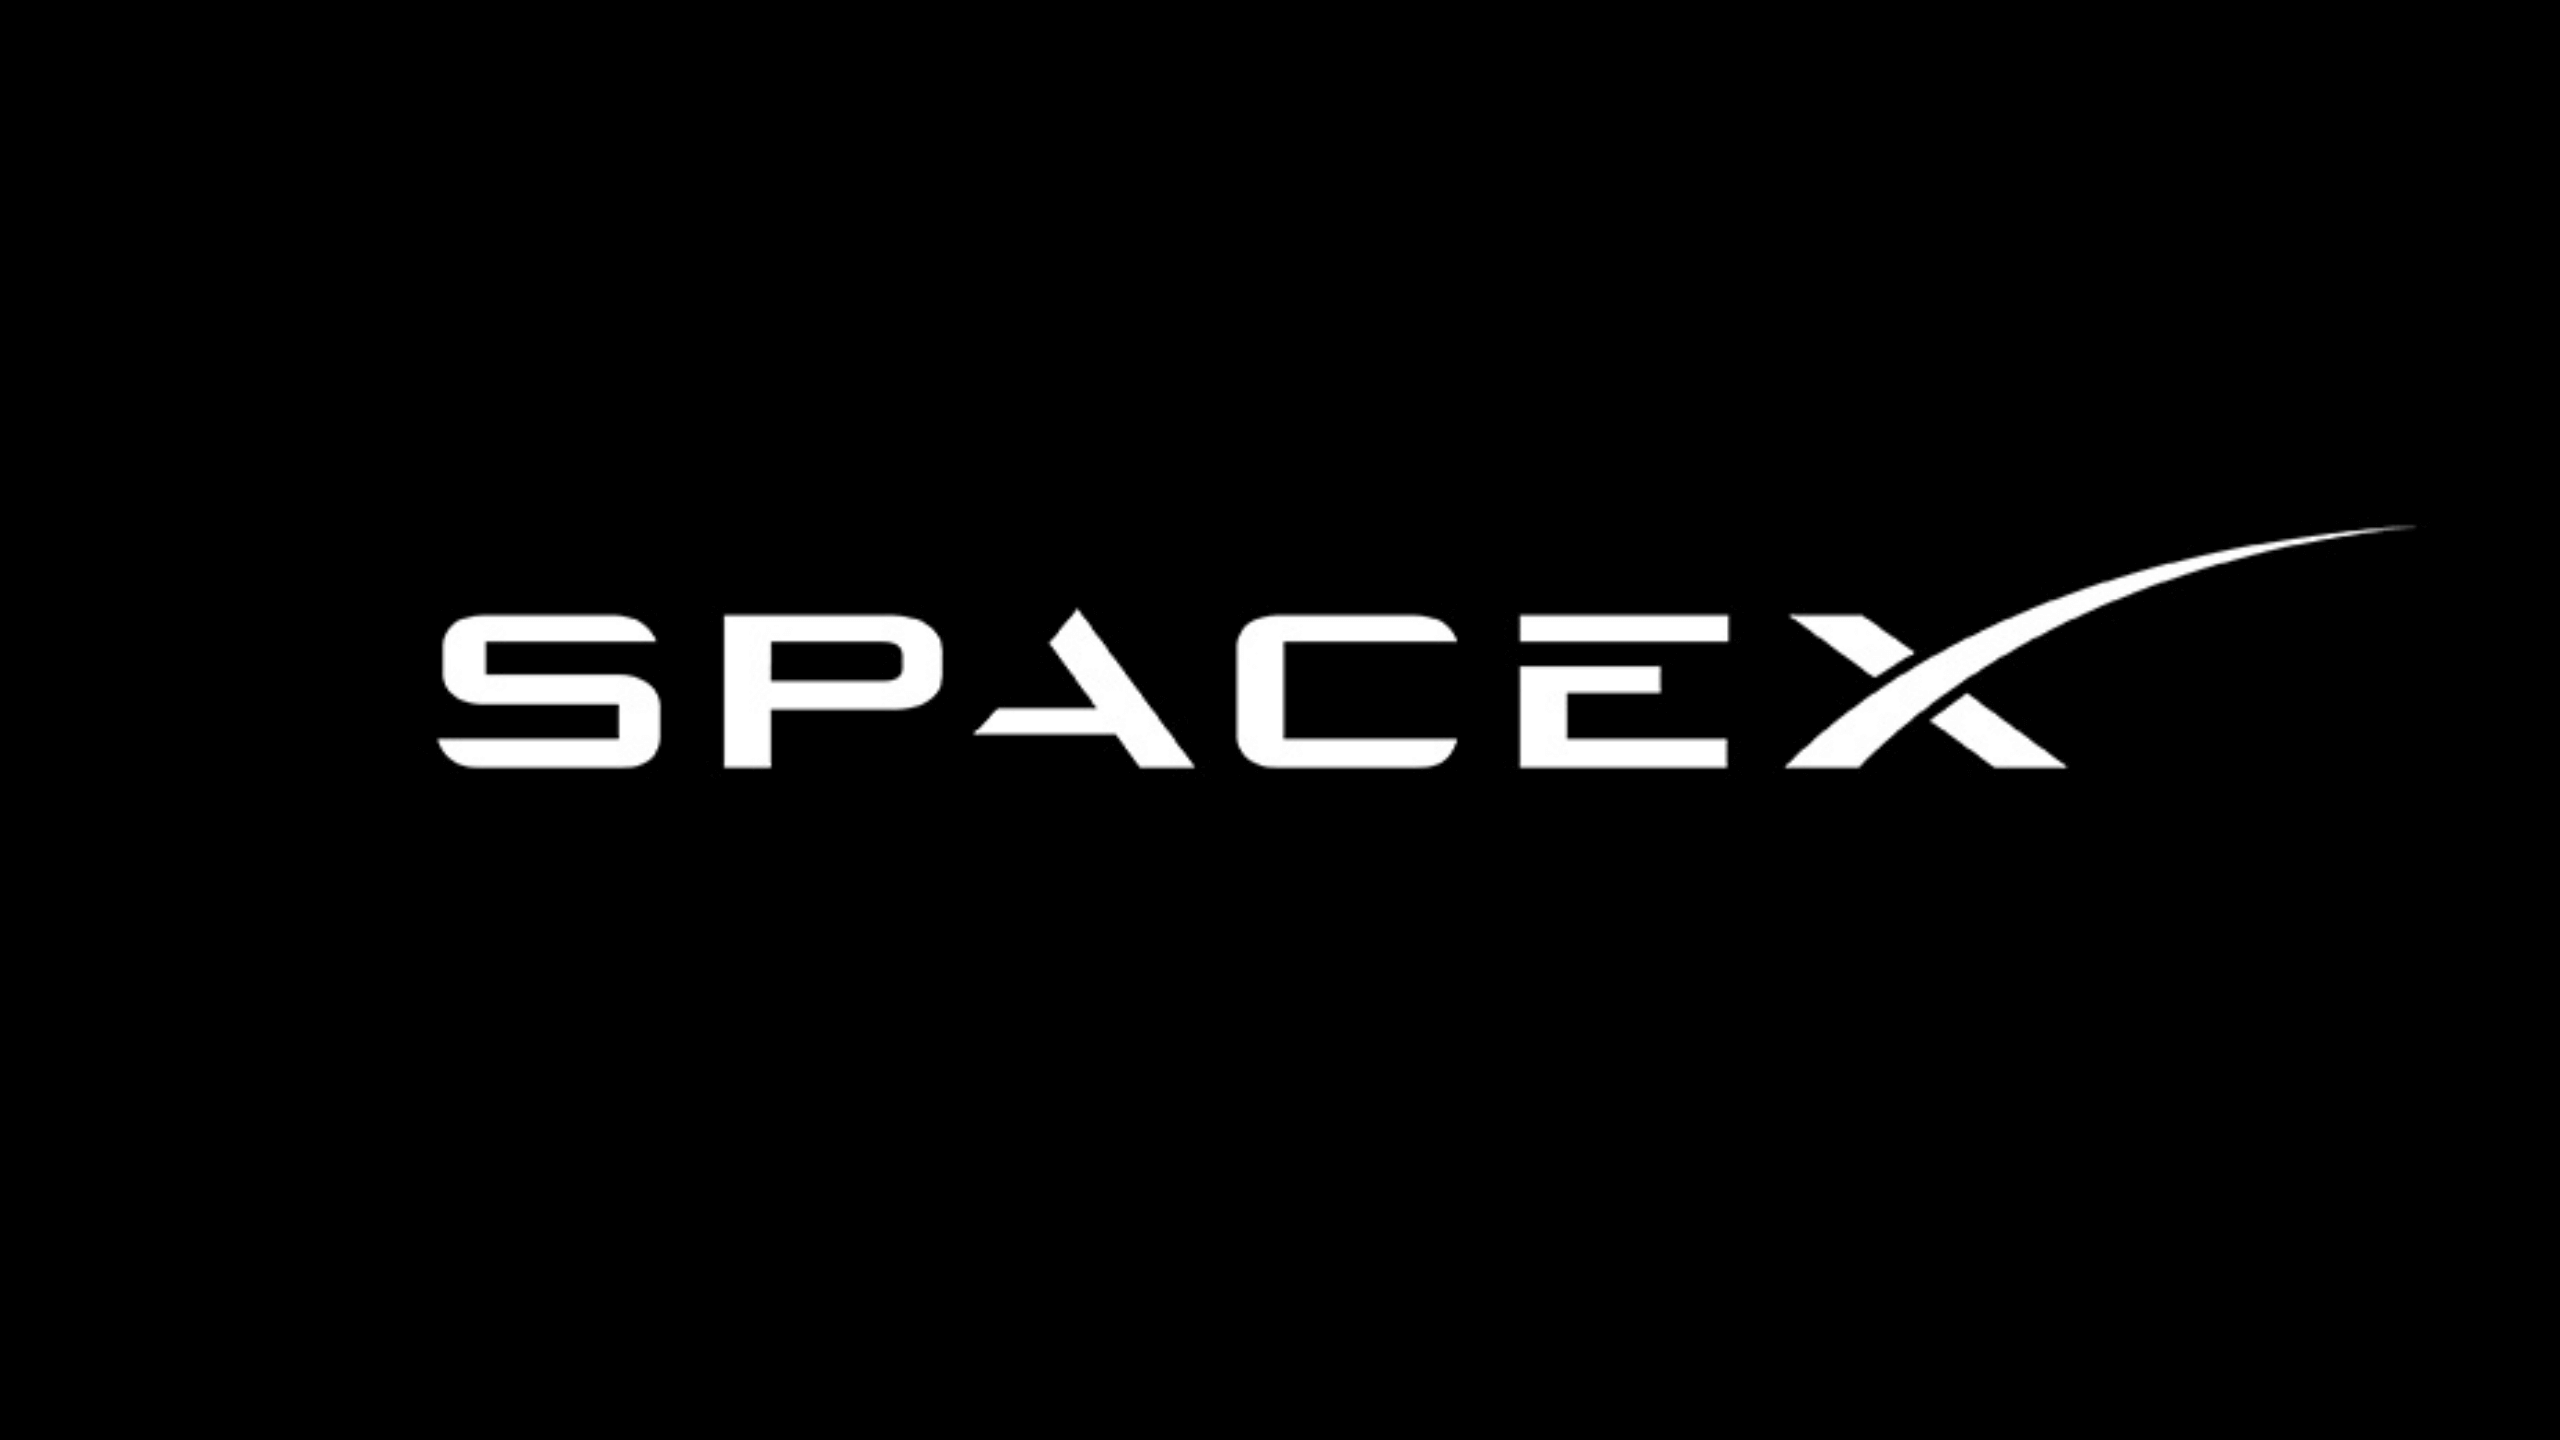 Грабіжника затримали за проникнення в автомобілі безпеки SpaceX